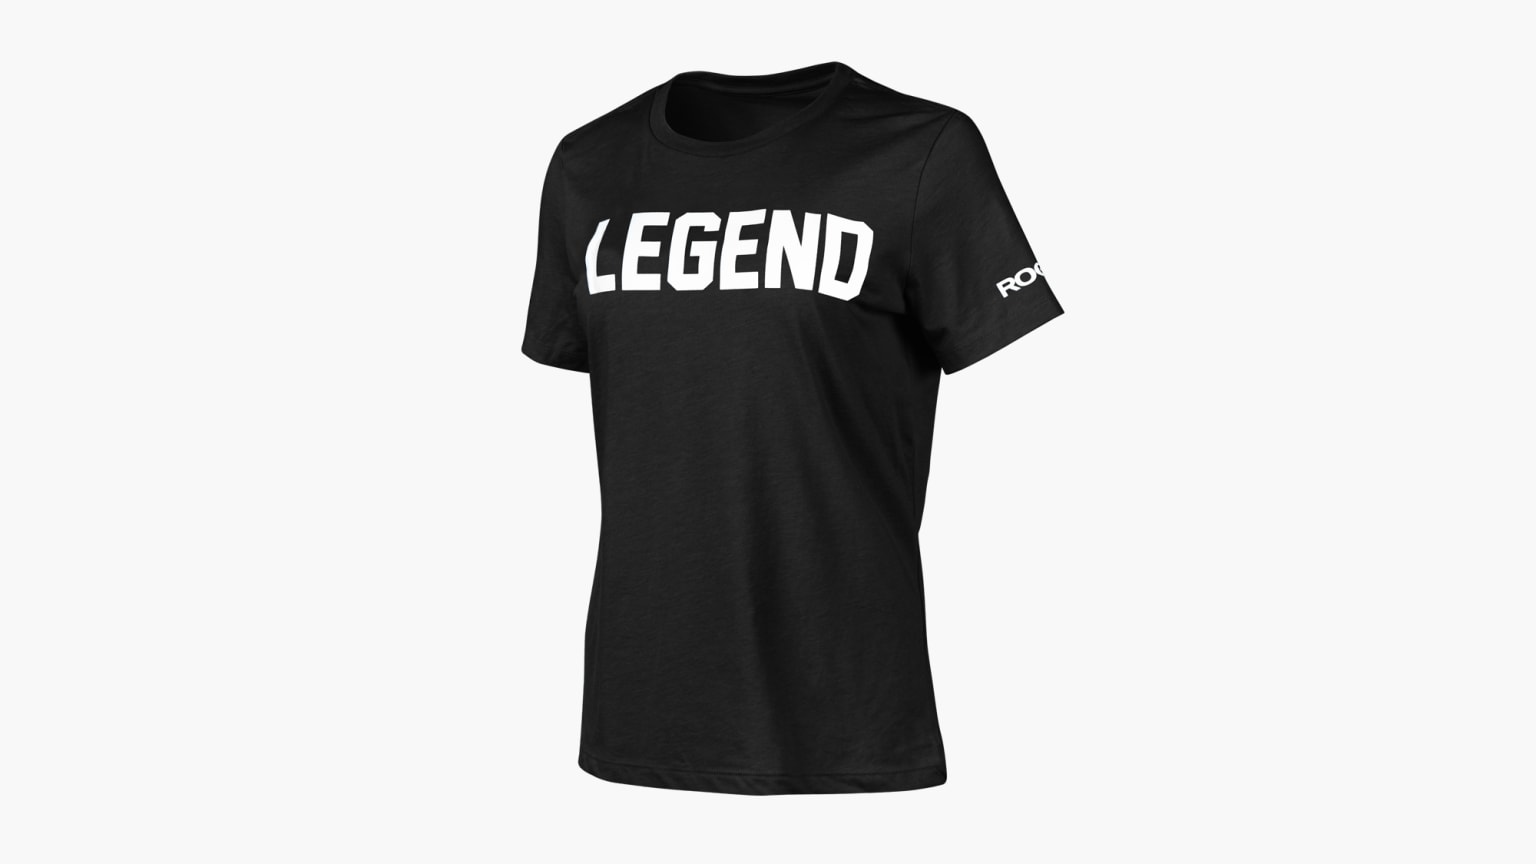 Rogue Women's Relaxed Legends Shirt - Black / White